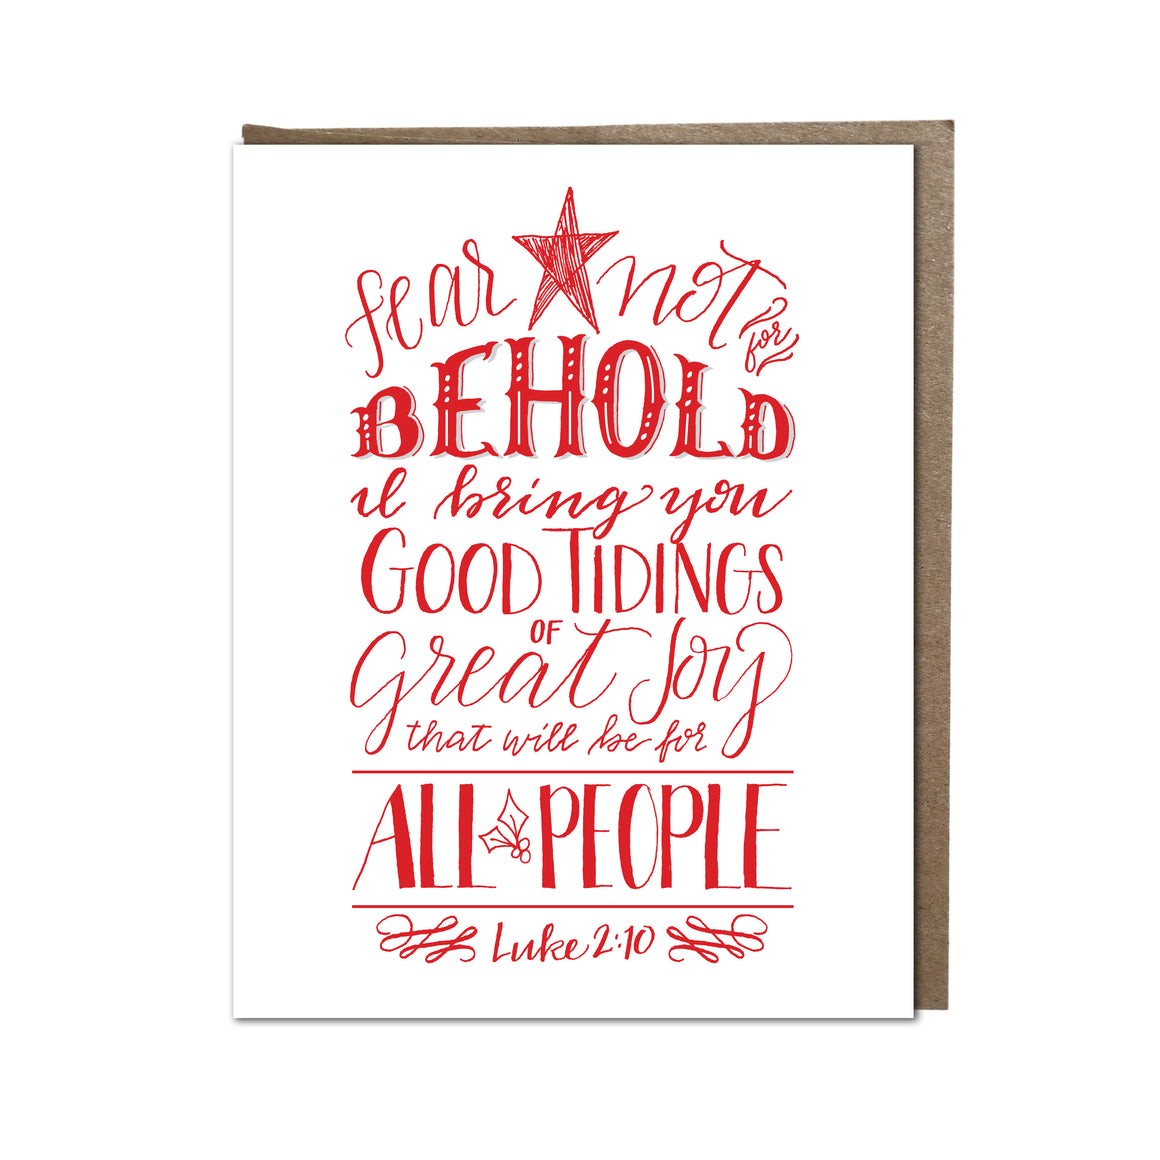 "Good Tidings of Great Joy" card